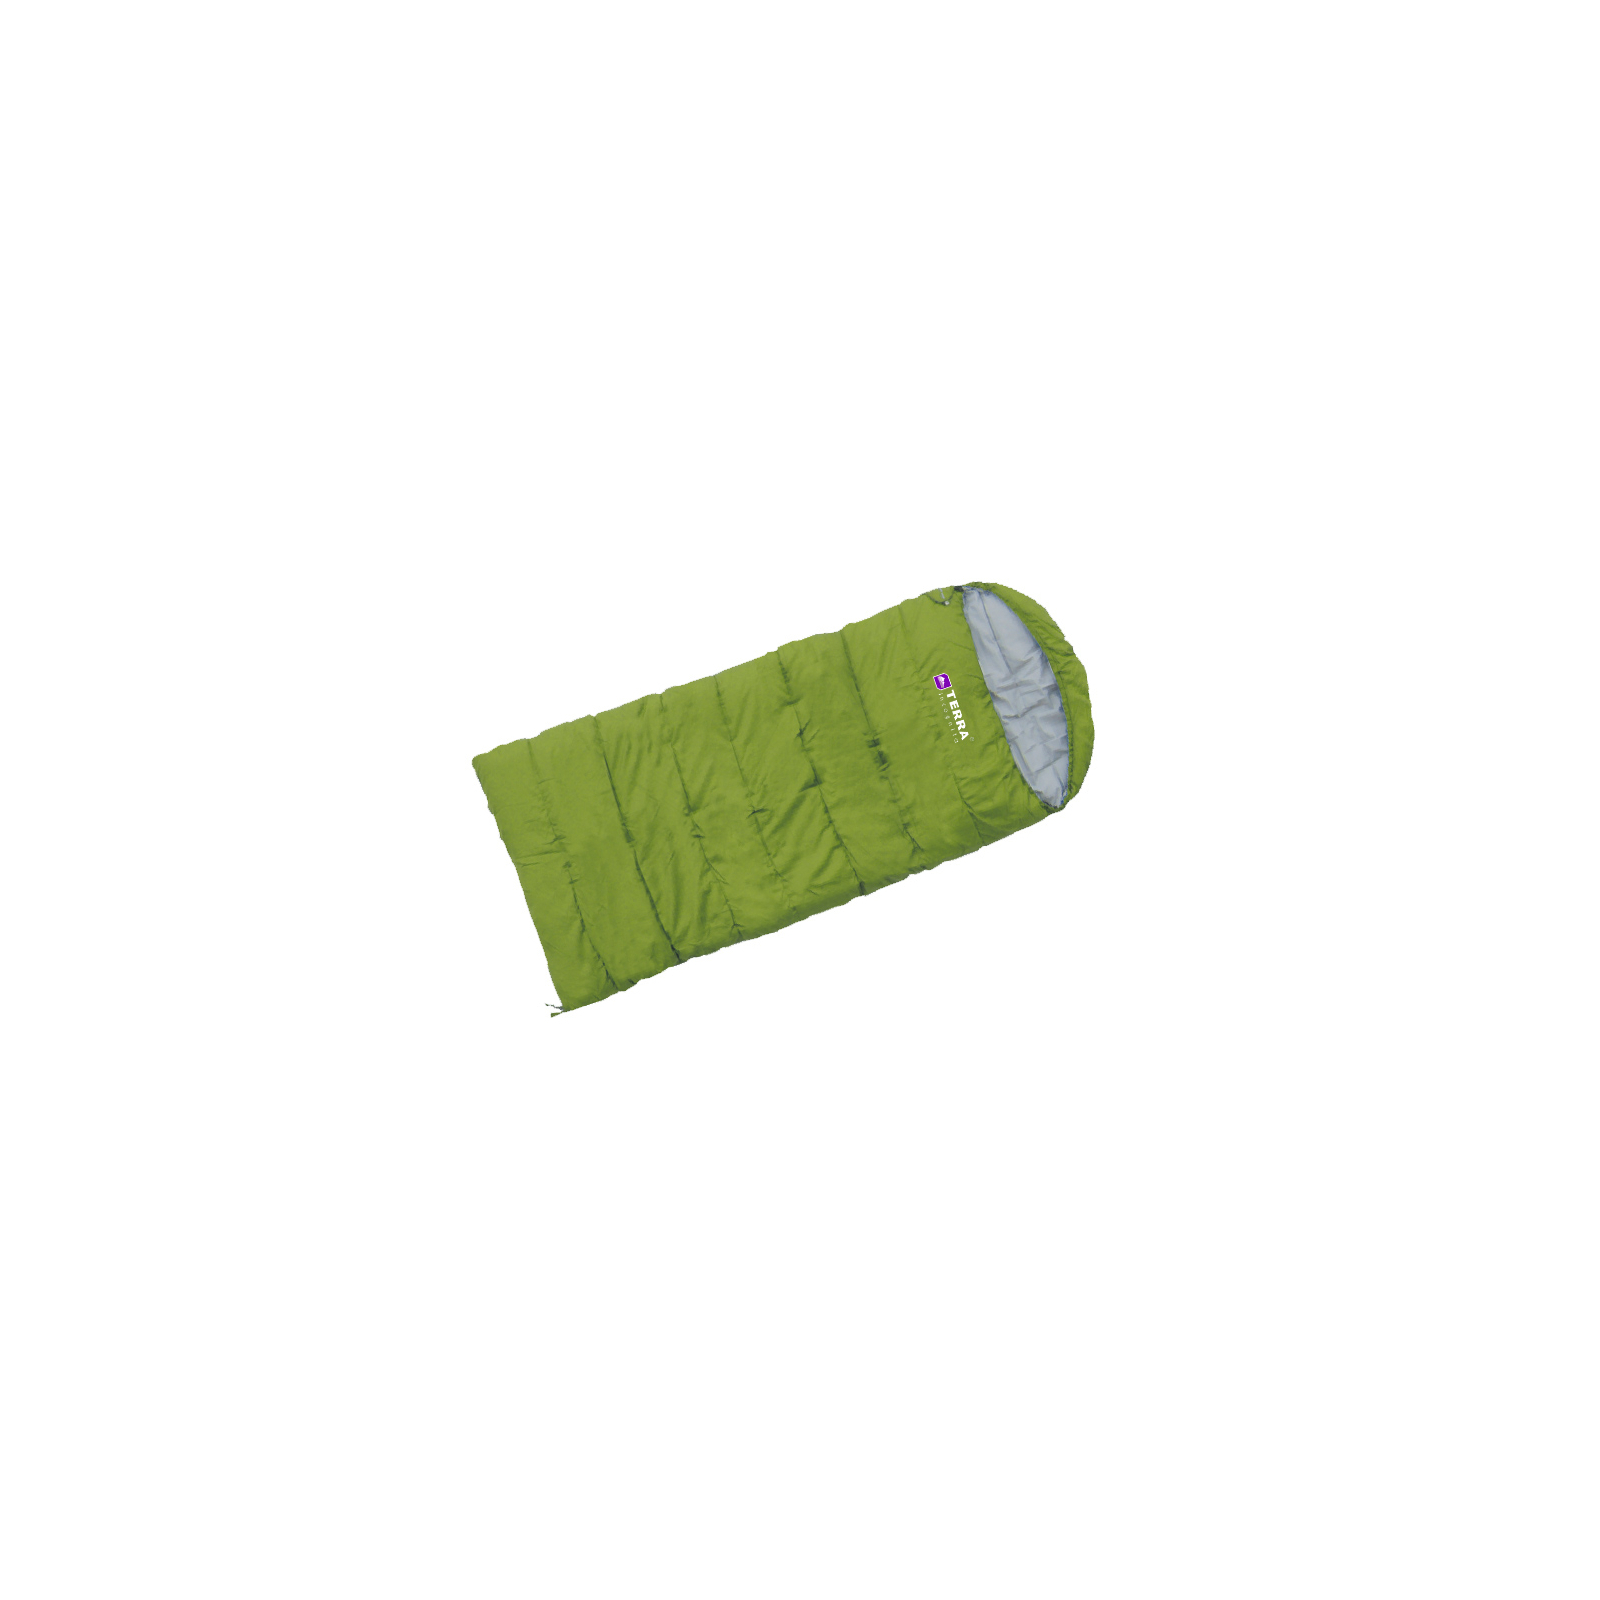 Спальный мешок Terra Incognita Asleep 300 JR (R) (зелёный) (4823081503583)